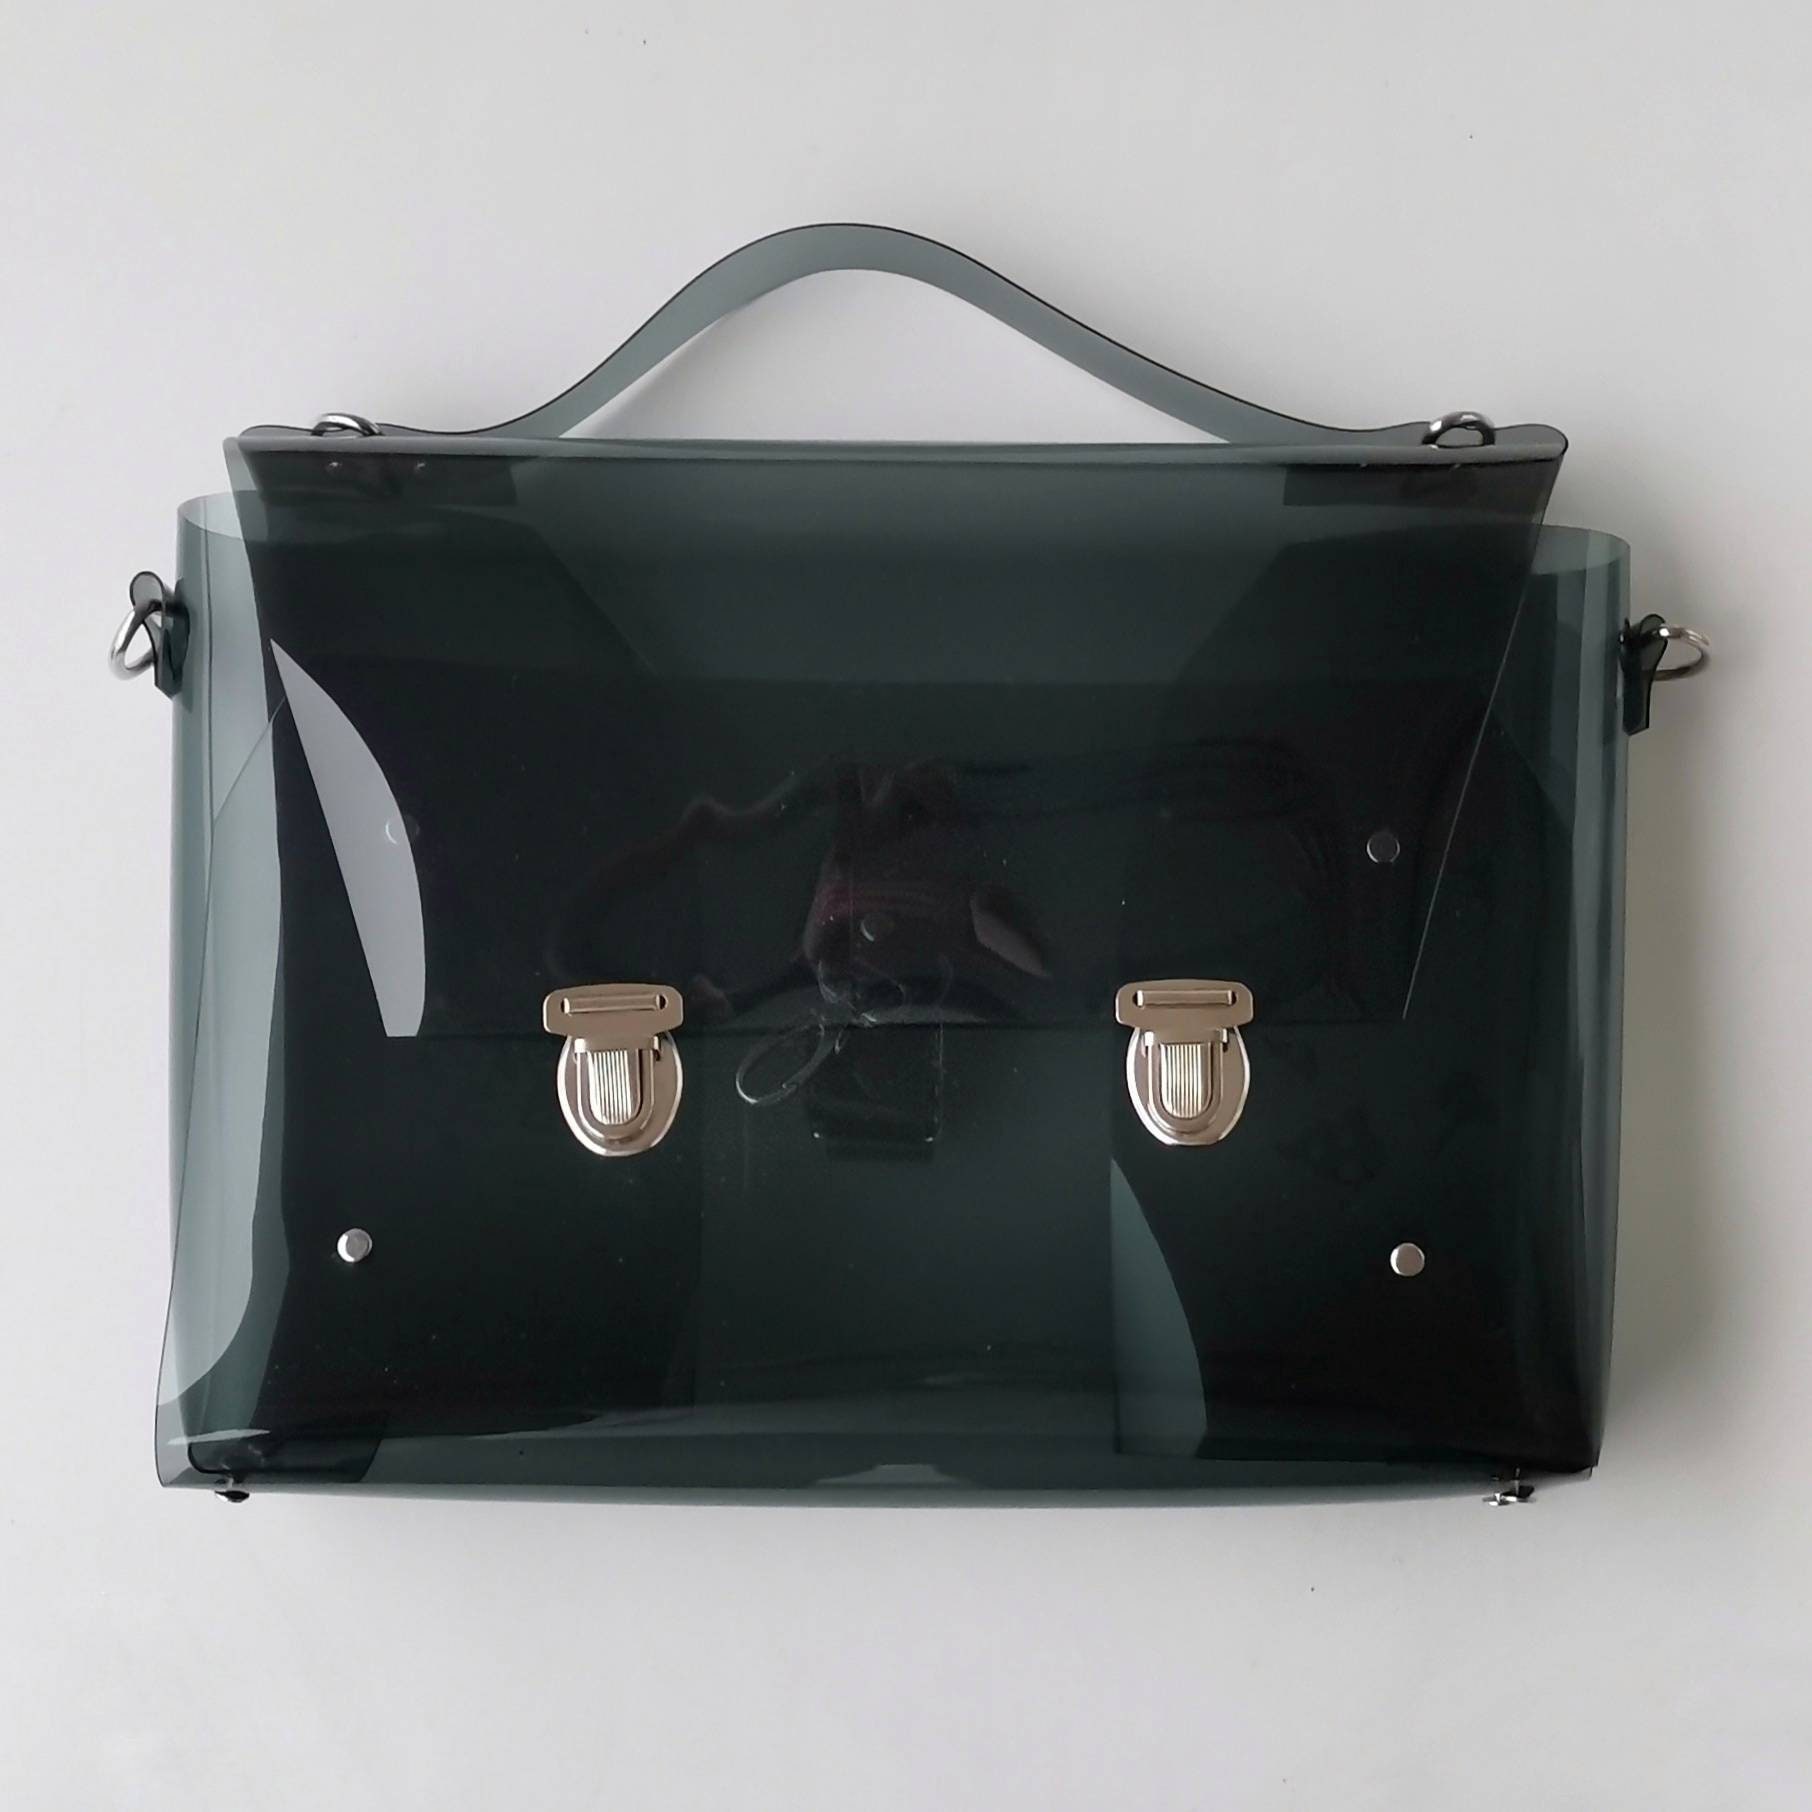 Clear Messenger Bag Transparent Bag Grommet Bag Clear Handbag 